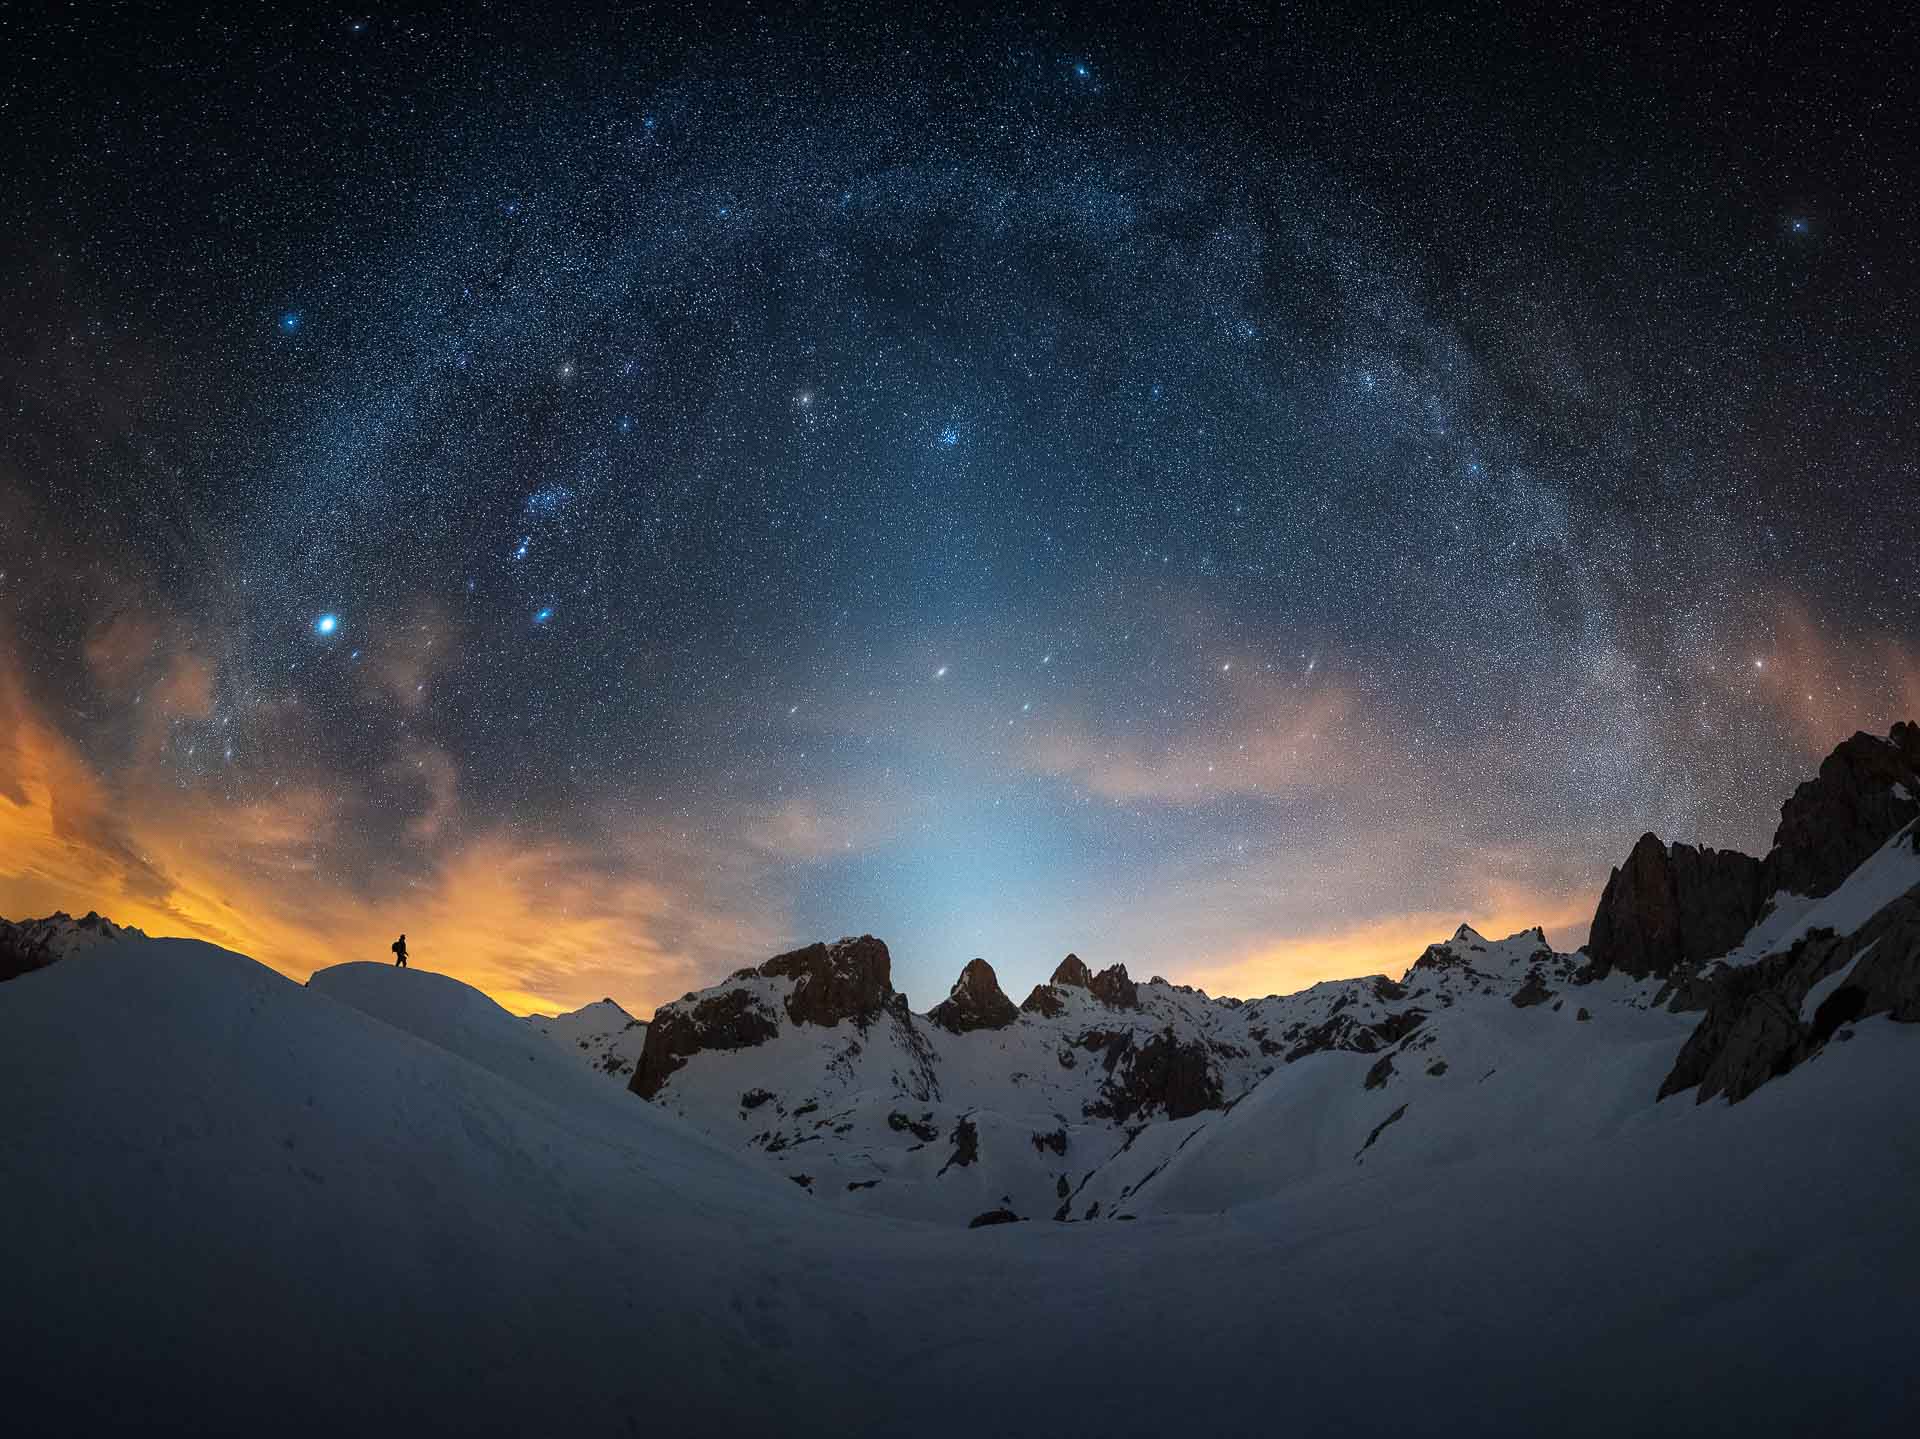 Milky Way Spain Picos de Europa zodiacal light Orion arm